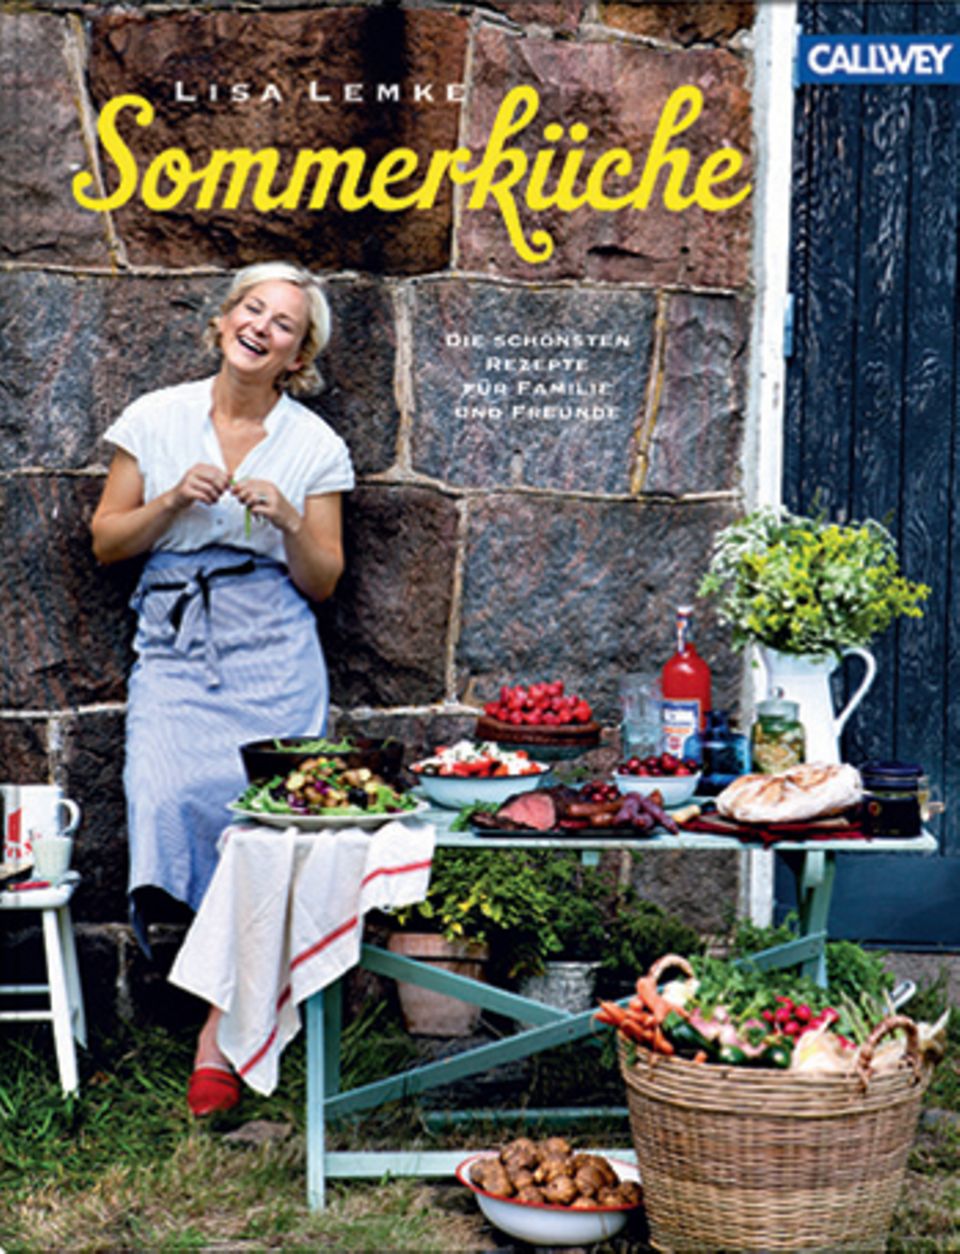 In ihrem zweiten Buch zeigt die schwedische Köchin und Foodstylistin Lisa Lemke, was diesen Sommer zum Picknick oder auf den Grill gehört. Omelette mit Trauben und Gorgonzola, chinesische Bratpflaumen oder Rosmarinpopcorn machen Appetit auf warme Tage und laue Nächte. ("Sommerküche", Callwey Verlag, 176 S., 24,95 Euro)